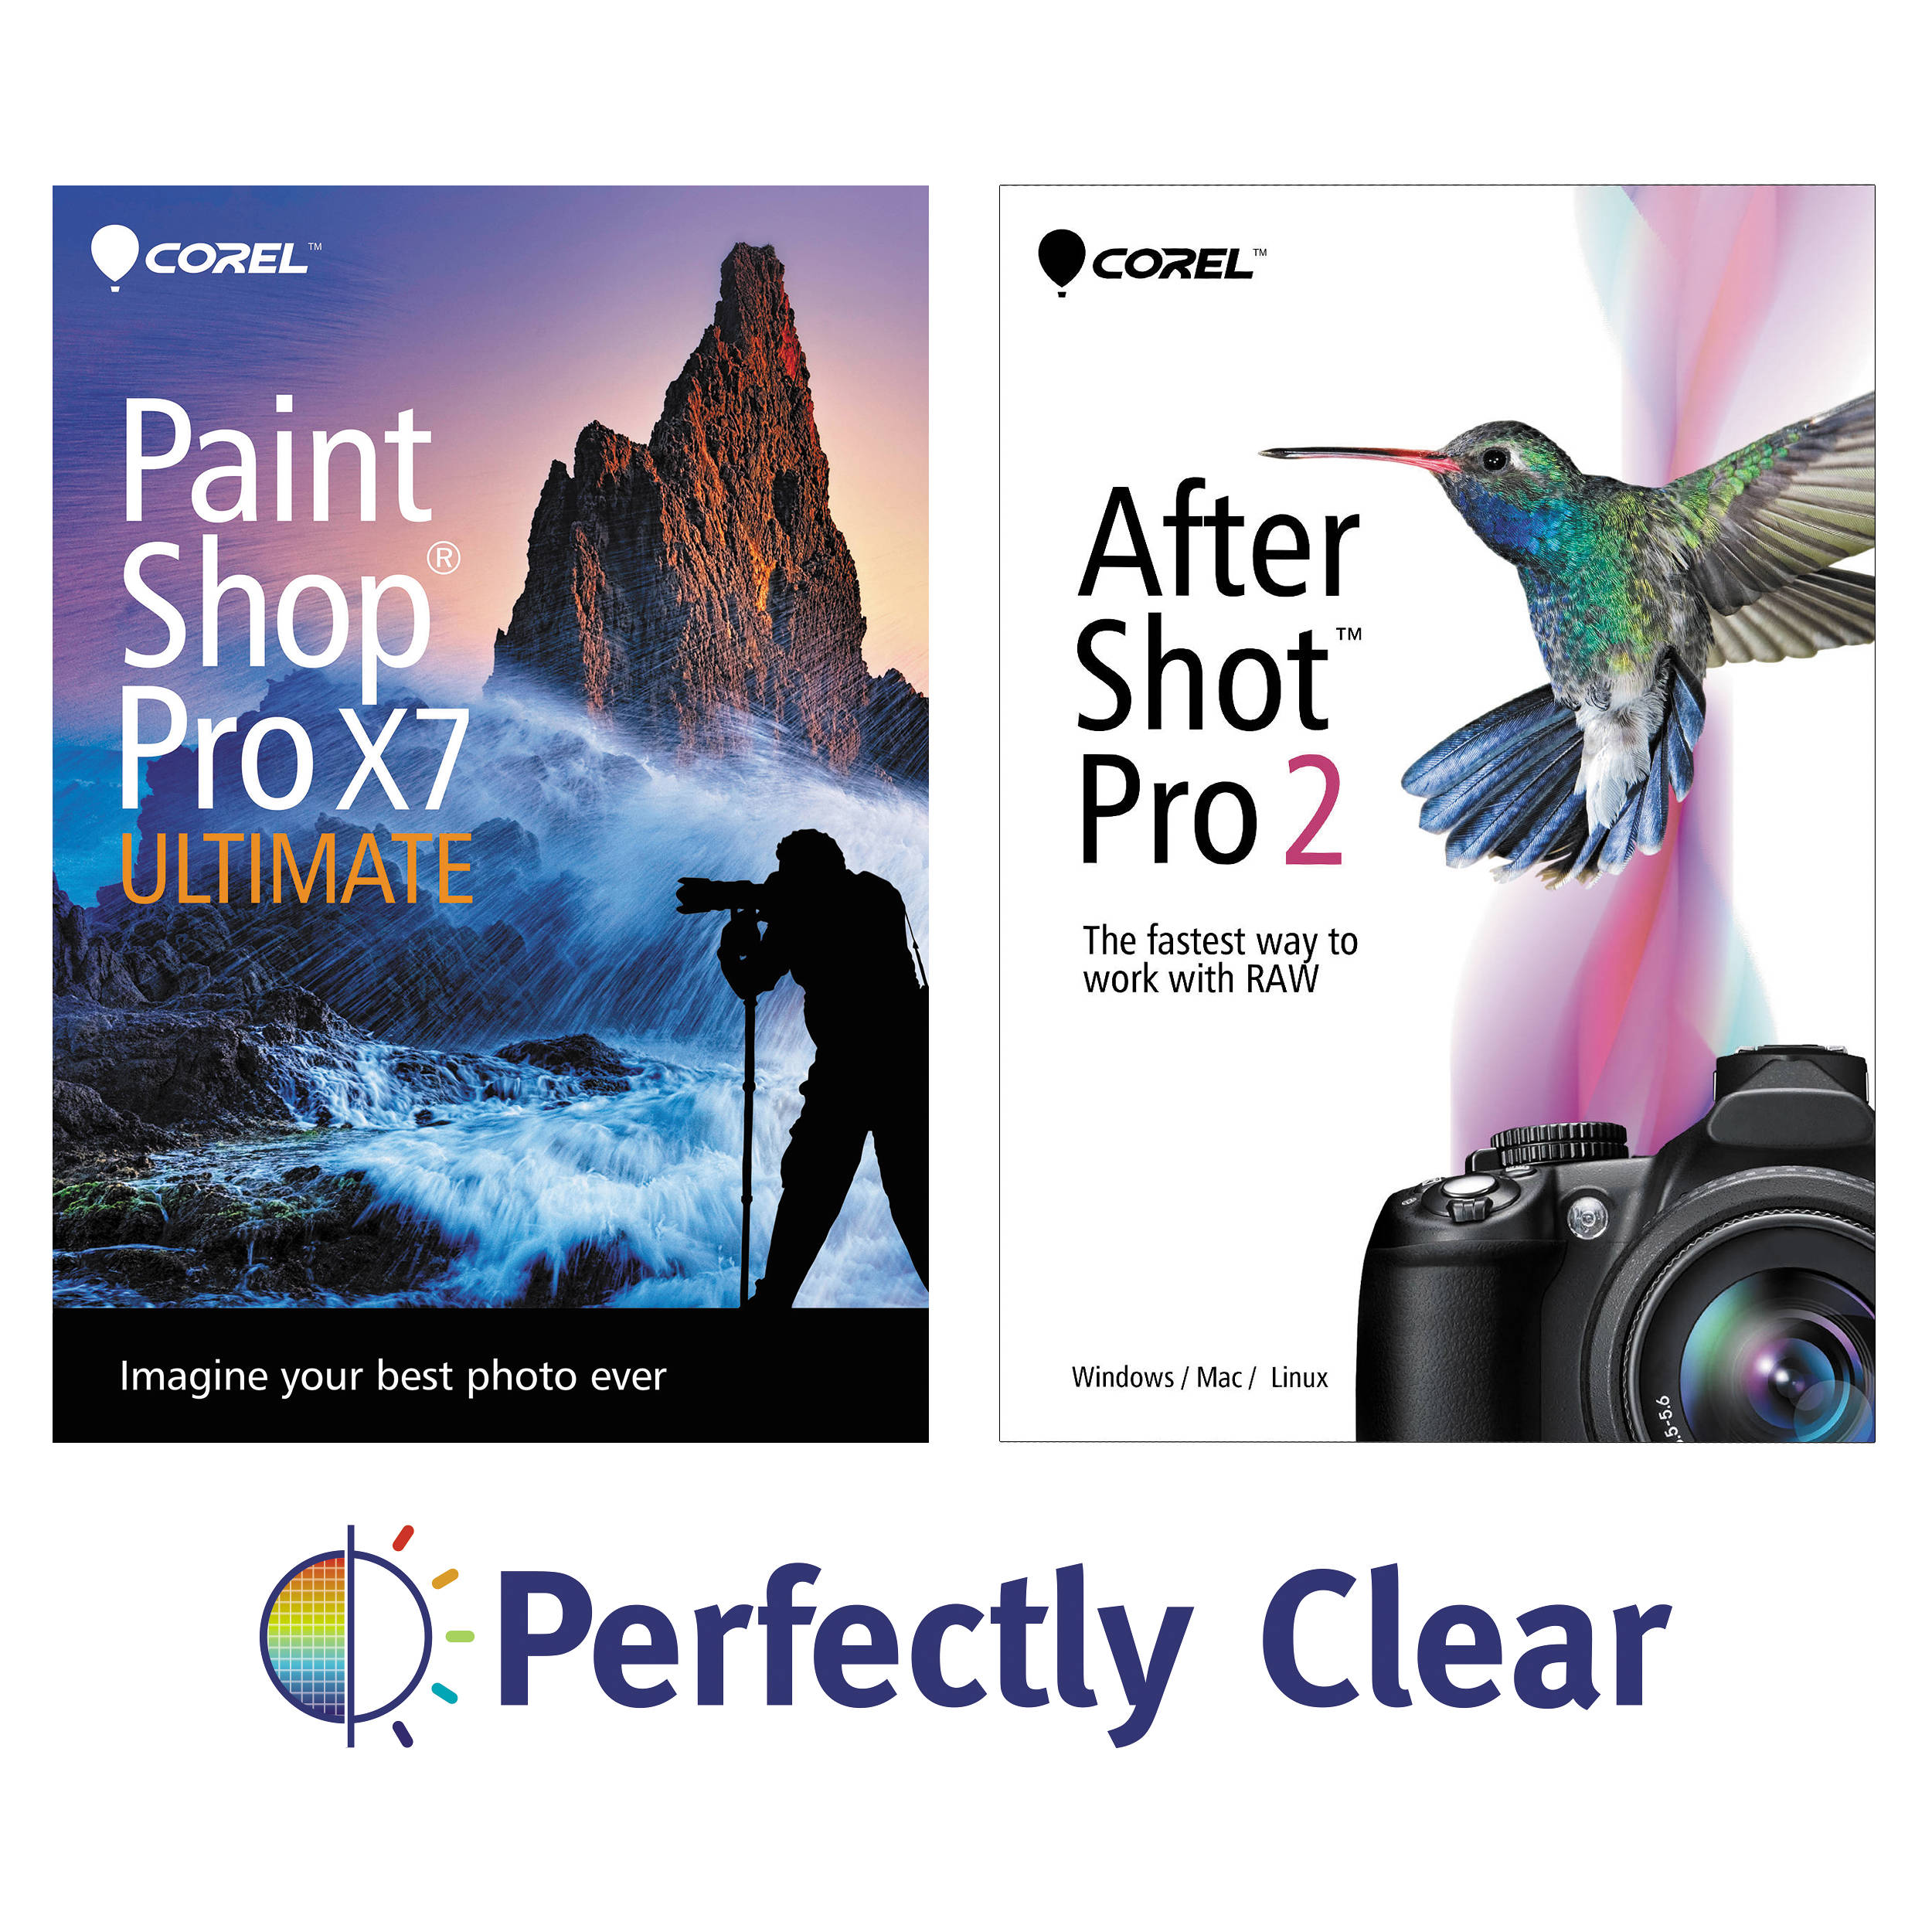 PaintShop Pro X7 Ultimate Pack mac